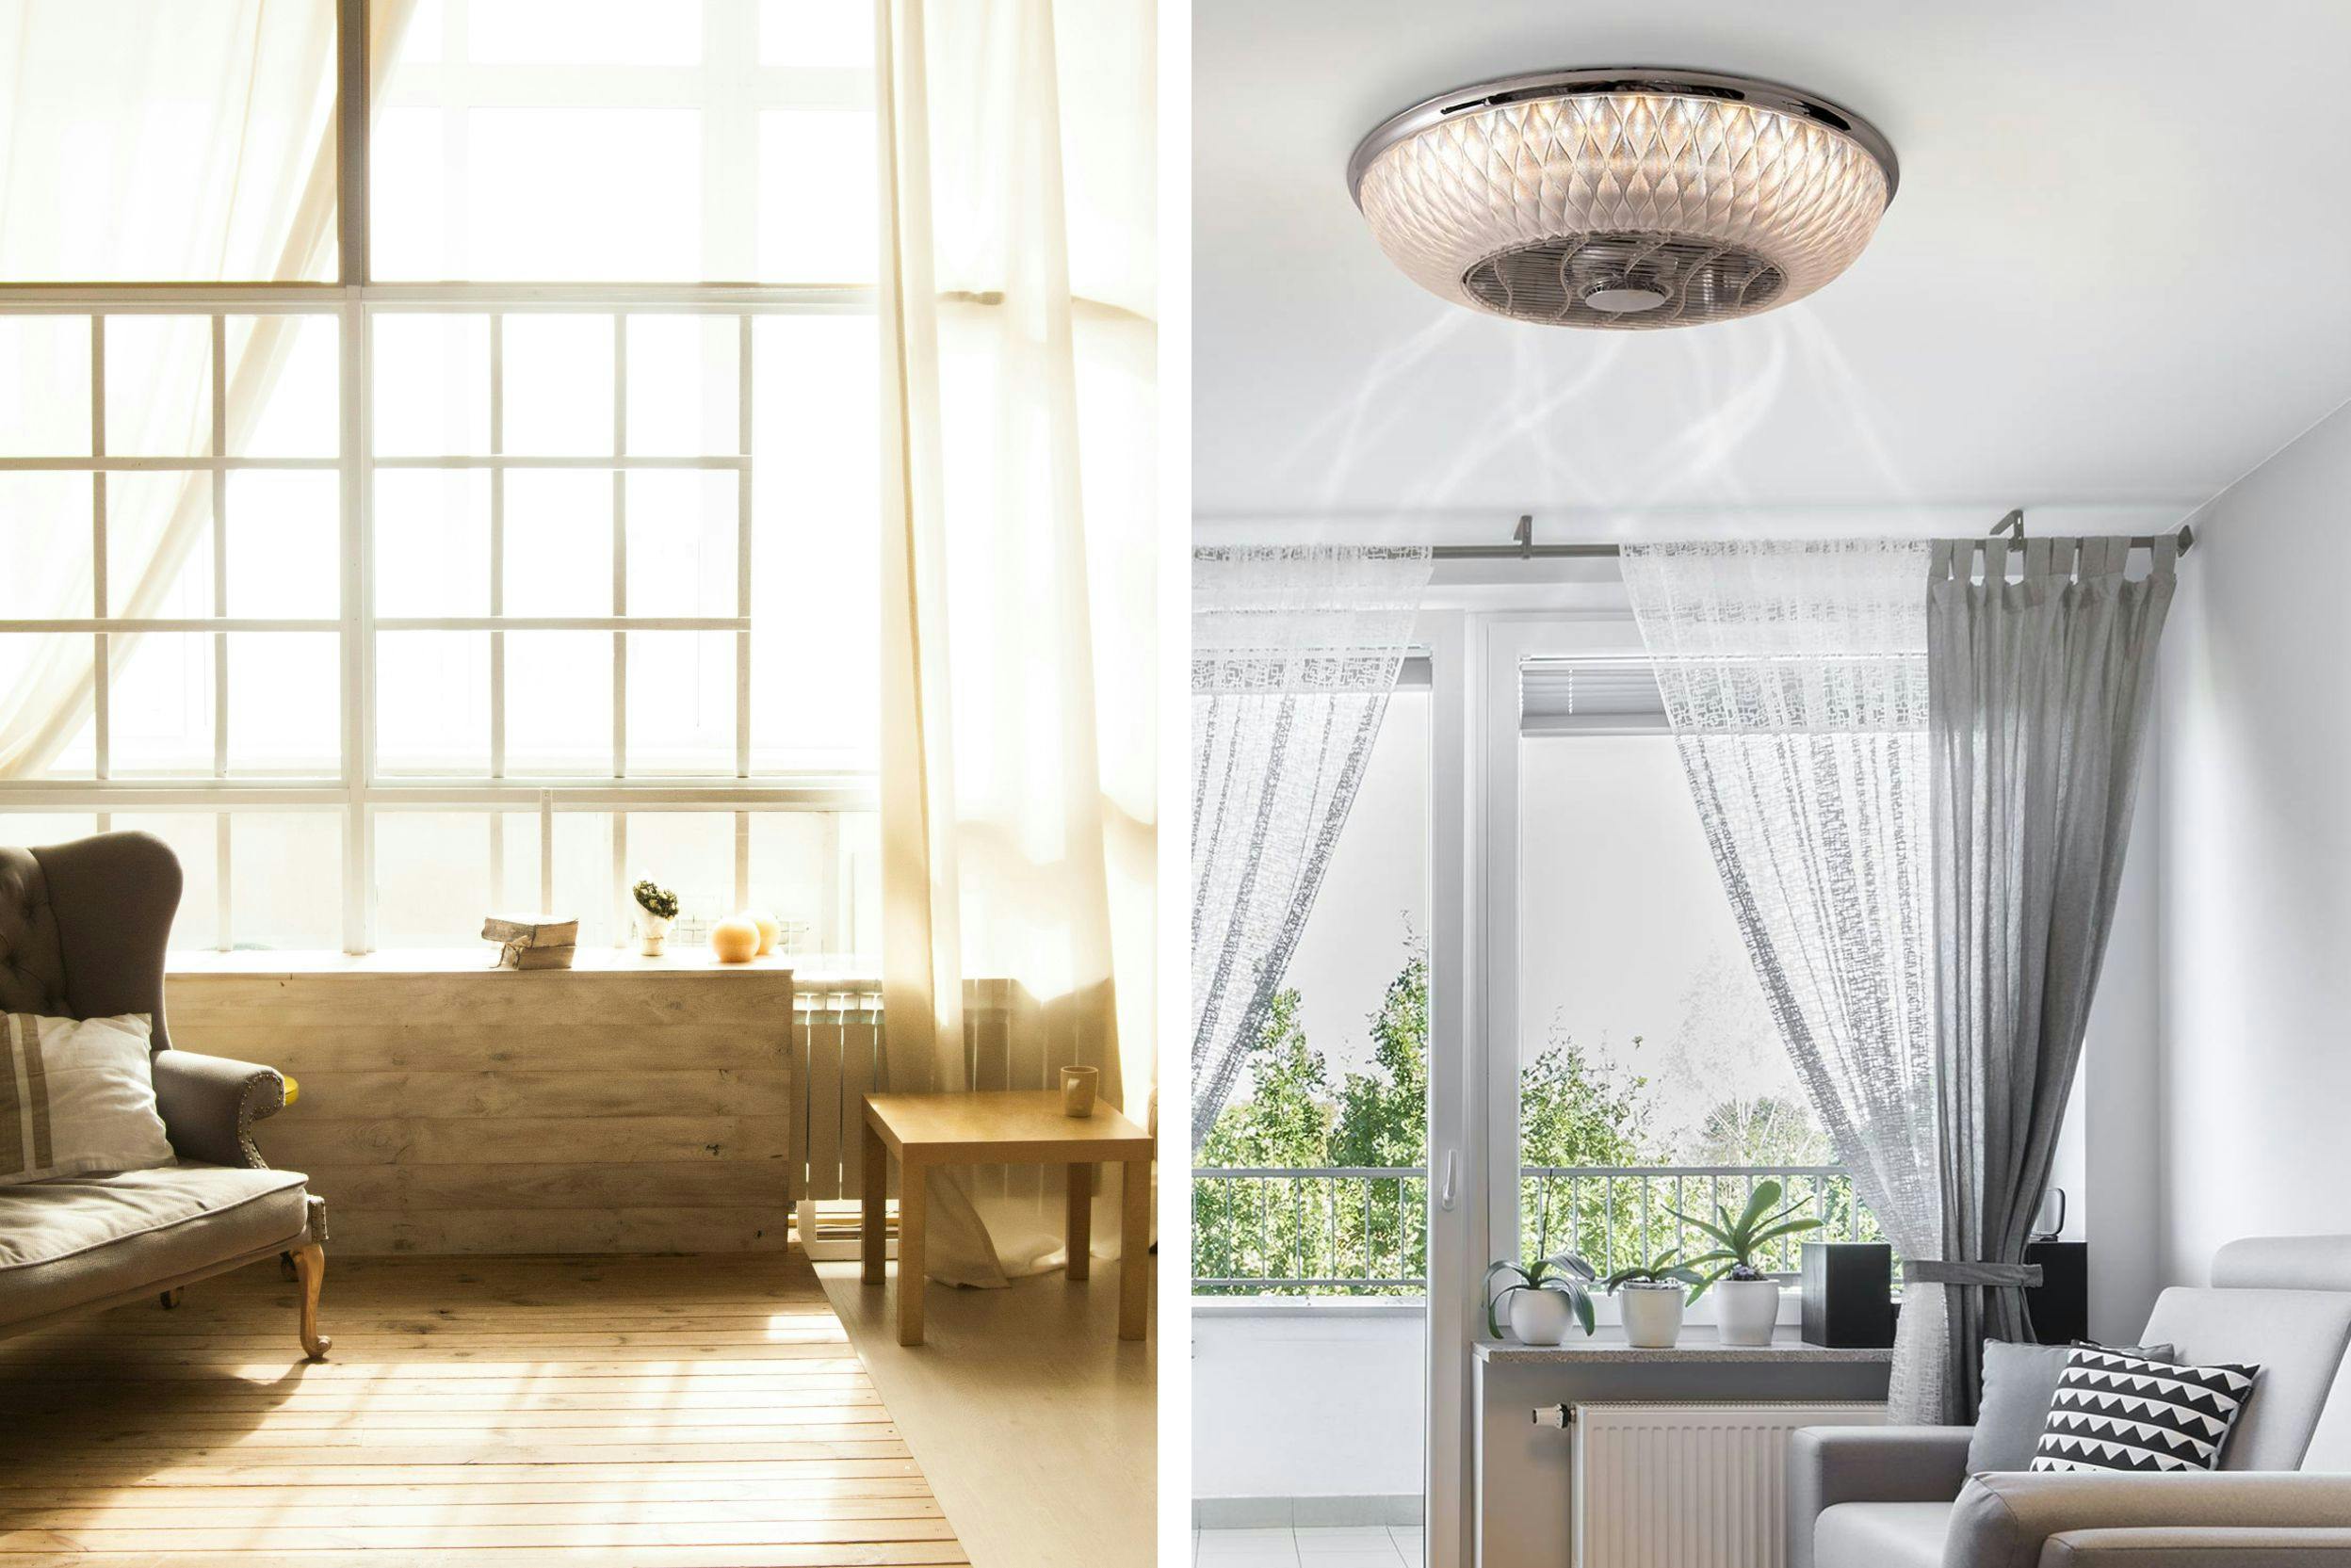 Deux photos : l'une est d'une pièce très lumineuse, avec rideaux blancs translucides et quelques meubles en bois clair ; l'autre est une pièce lumineuse avec plafonnier ventilateur, rideaux ouverts blancs translucides et meubles clairs